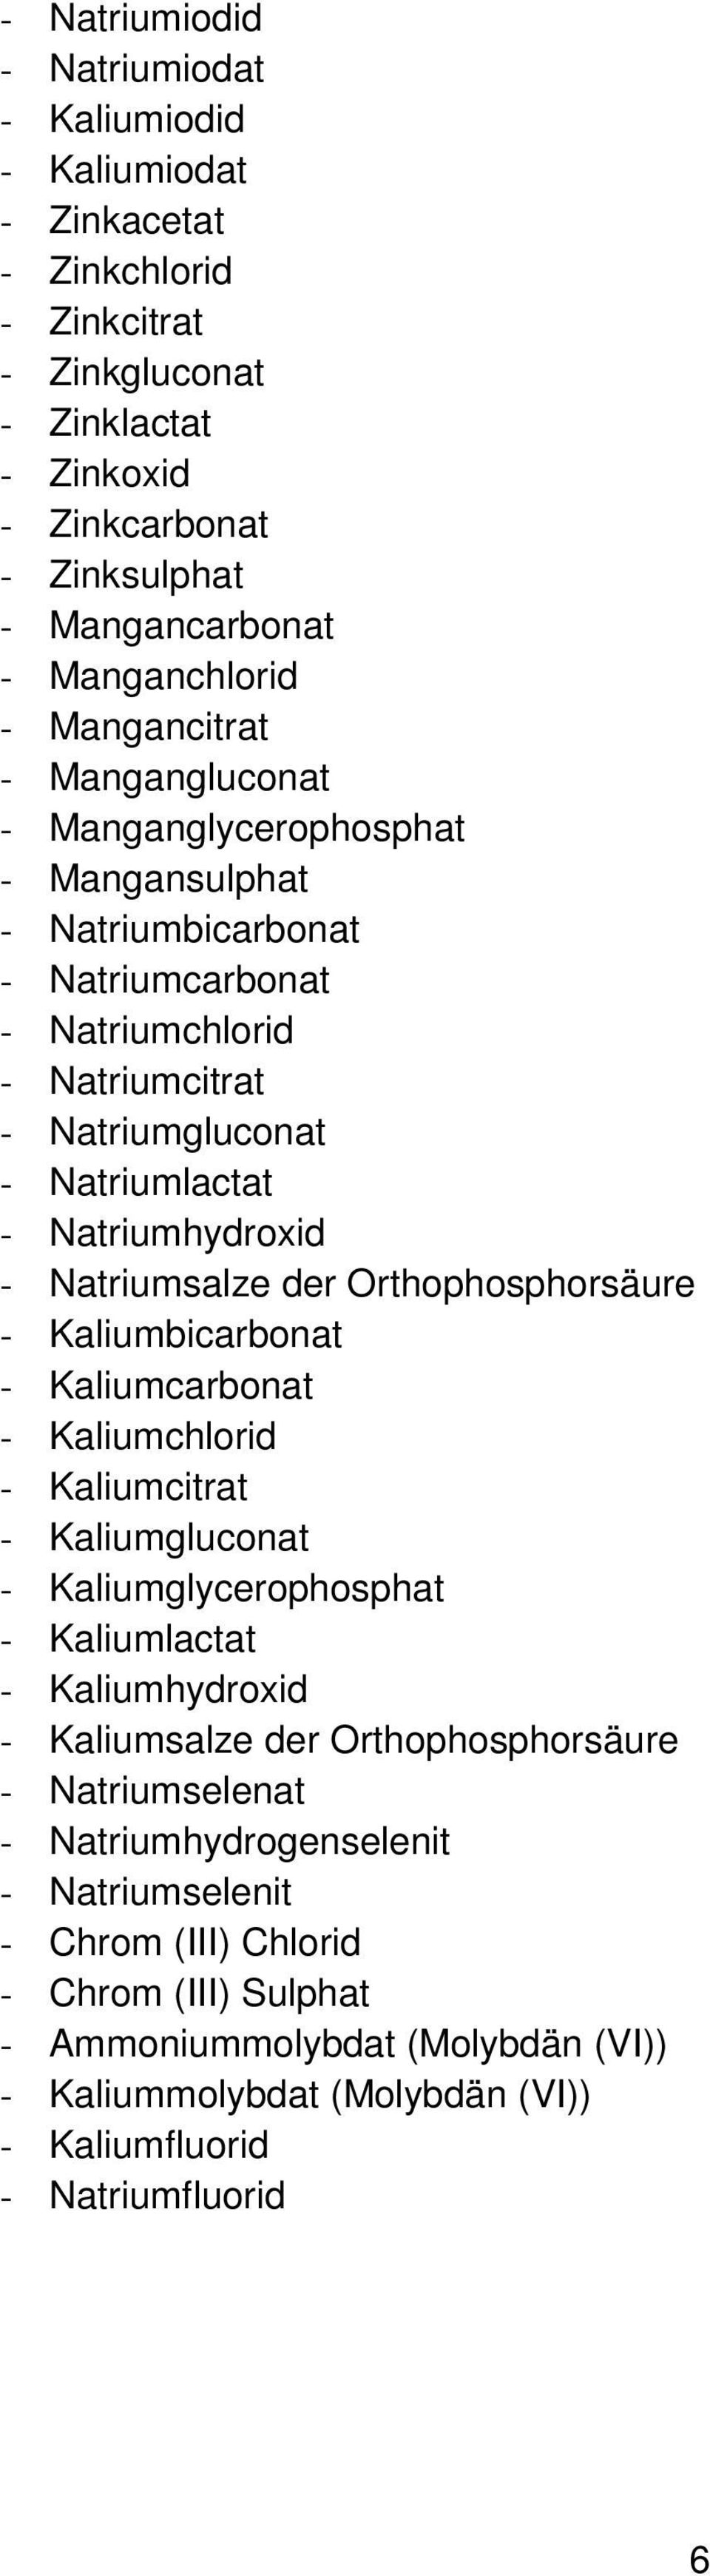 Natriumsalze der Orthophosphorsäure - Kaliumbicarbonat - Kaliumcarbonat - Kaliumchlorid - Kaliumcitrat - Kaliumgluconat - Kaliumglycerophosphat - Kaliumlactat - Kaliumhydroxid - Kaliumsalze der